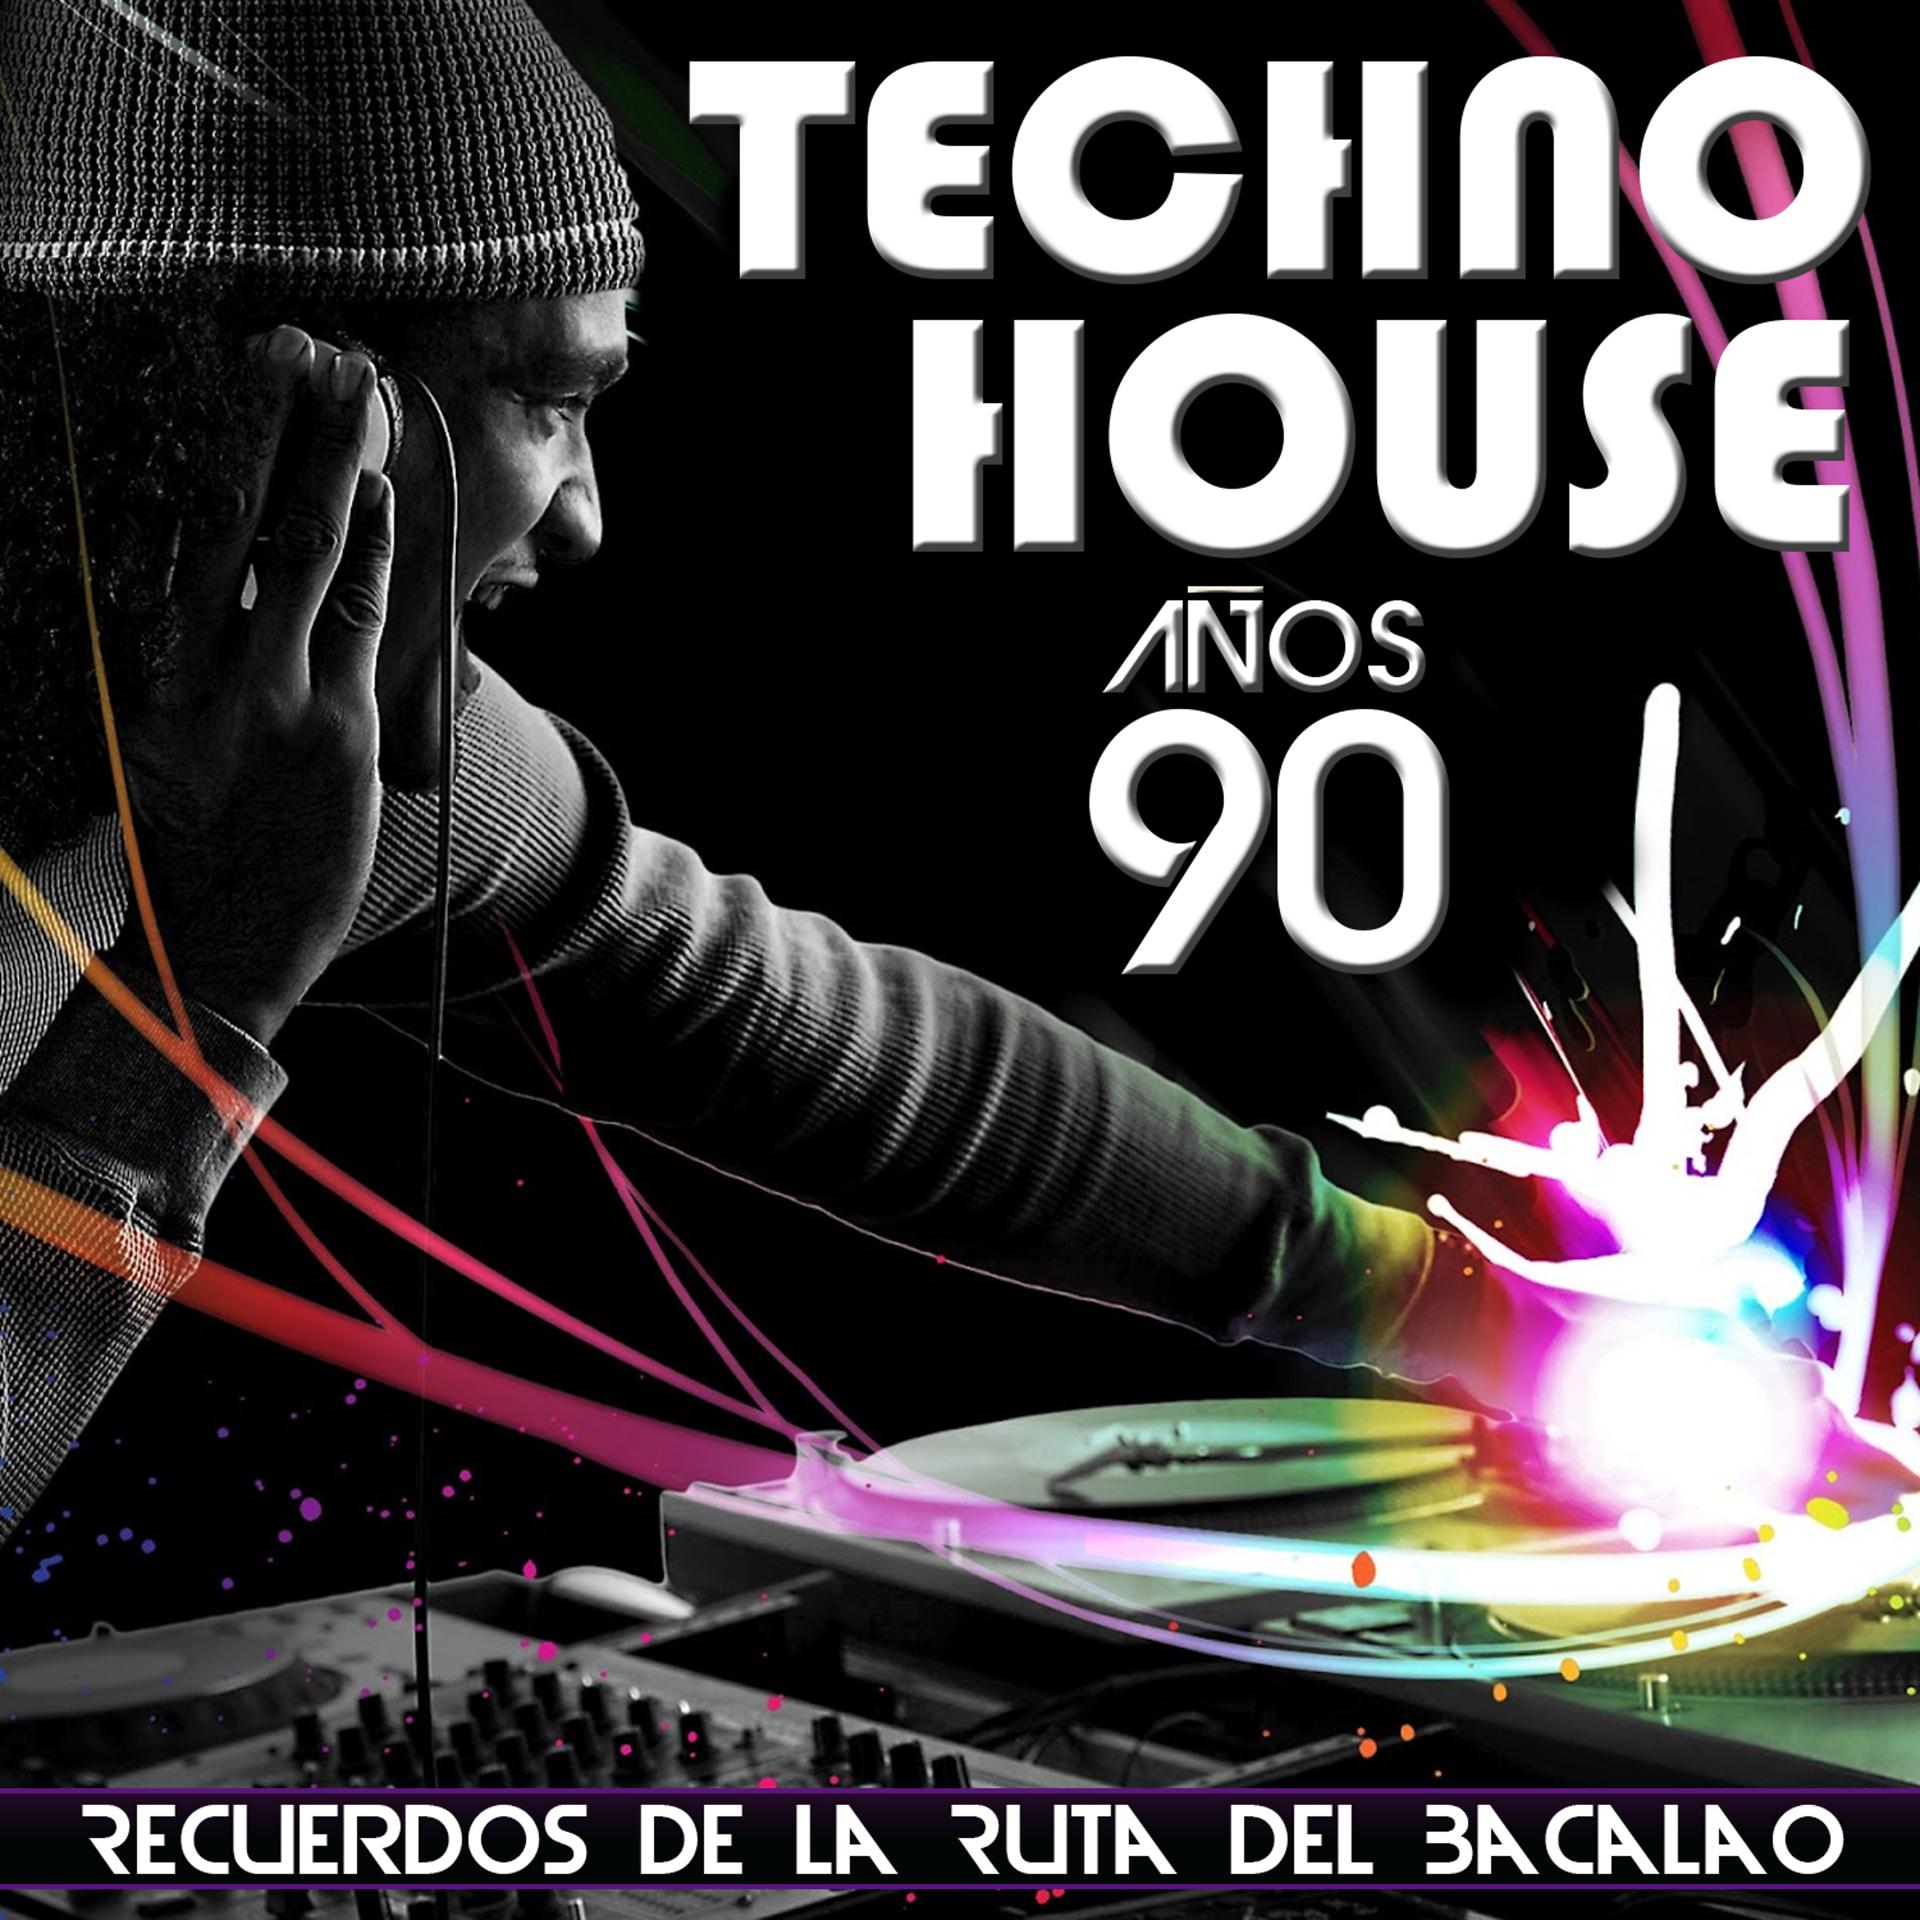 Постер альбома Recuerdos de la Ruta del Bacalao. Música Techno House Años 90